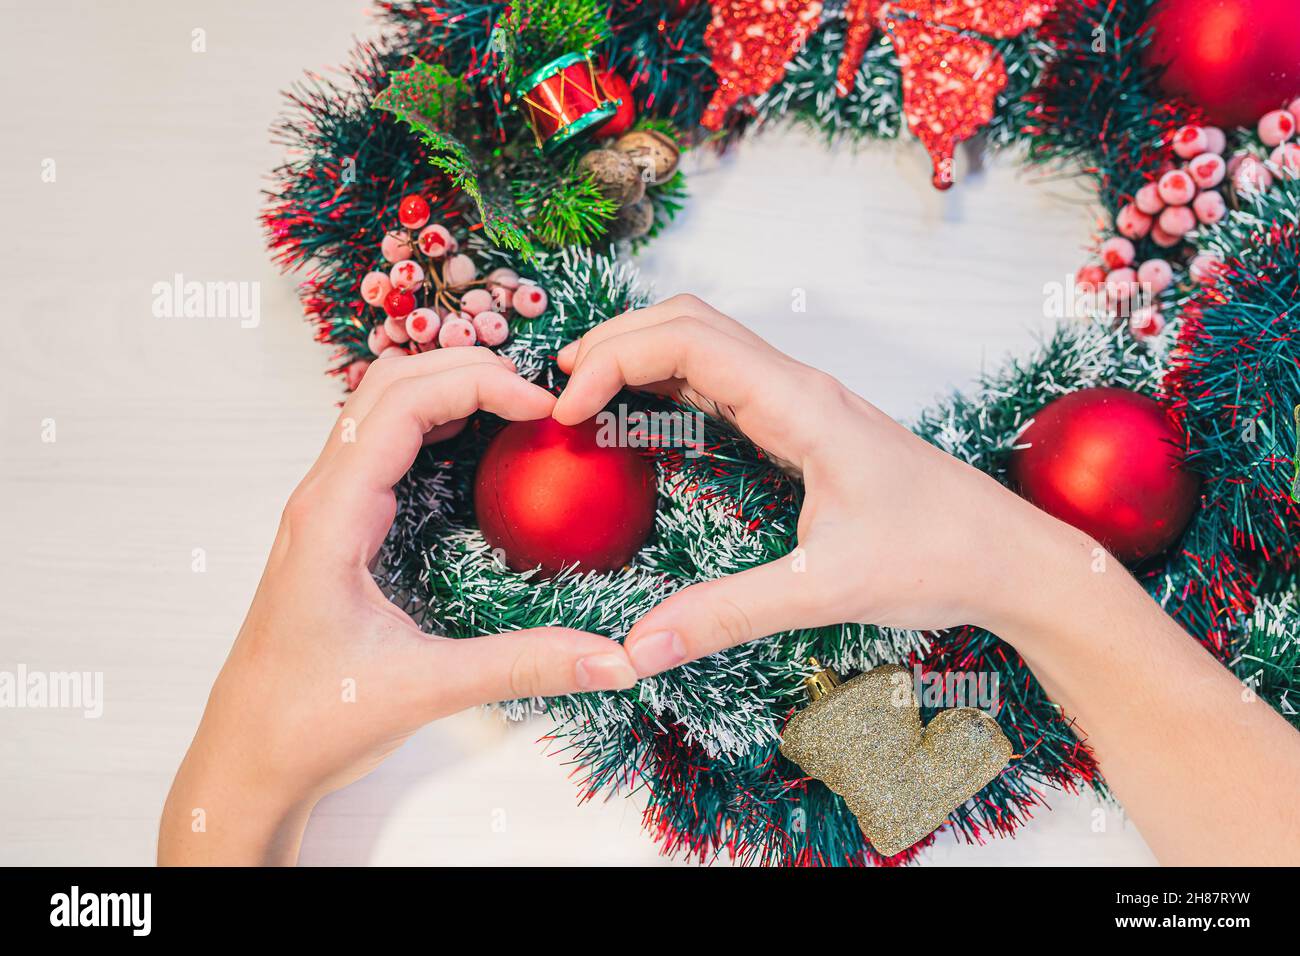 Weihnachtskranz auf Holzhintergrund. Frauenhänden zeigen auf dem Hintergrund des Weihnachtskranzes mit roten Kugeln ein Herzsymbol. Stockfoto